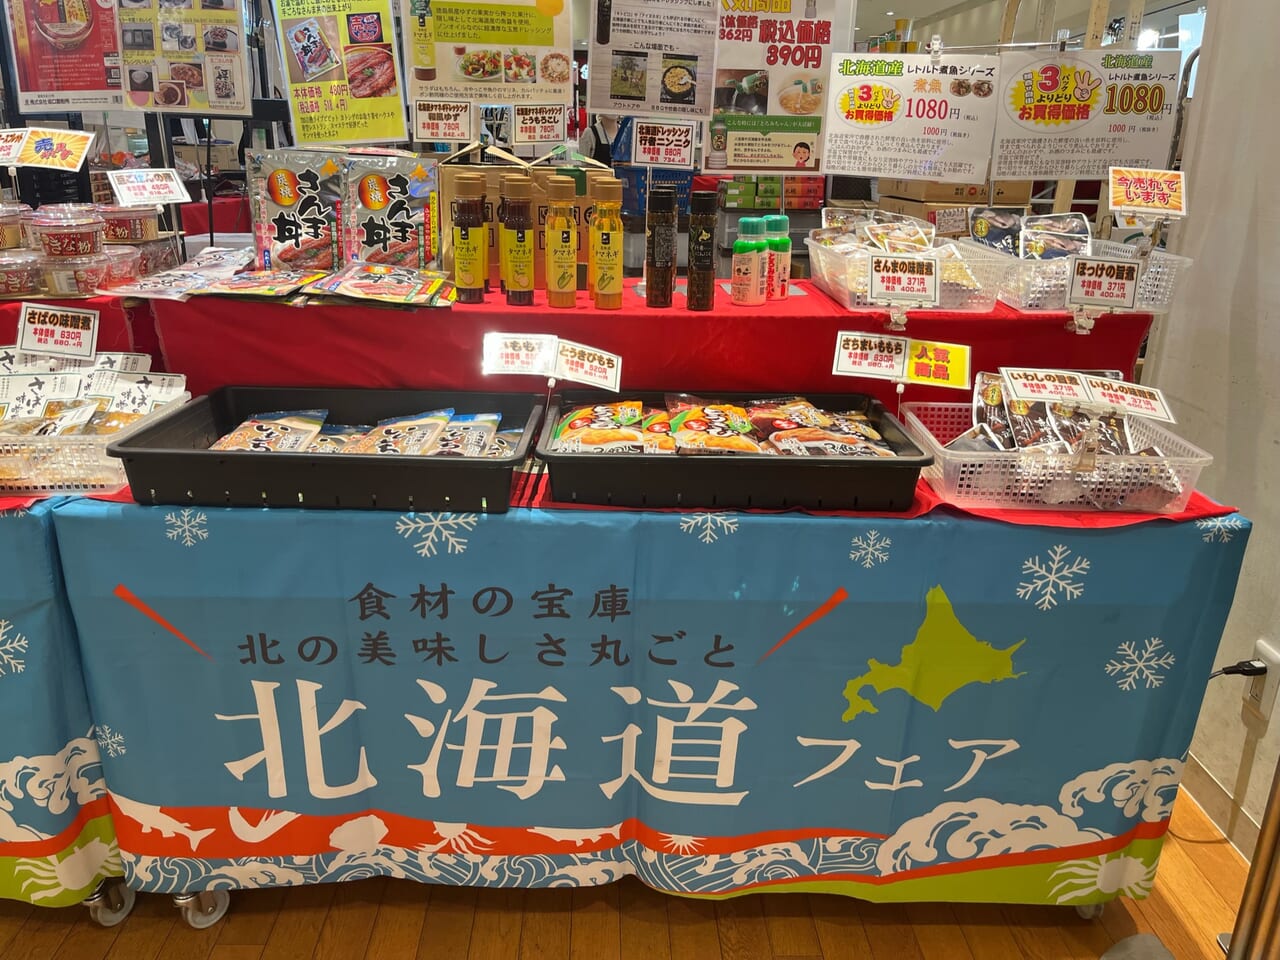 テラスモール湘南で開催している北海道物産展